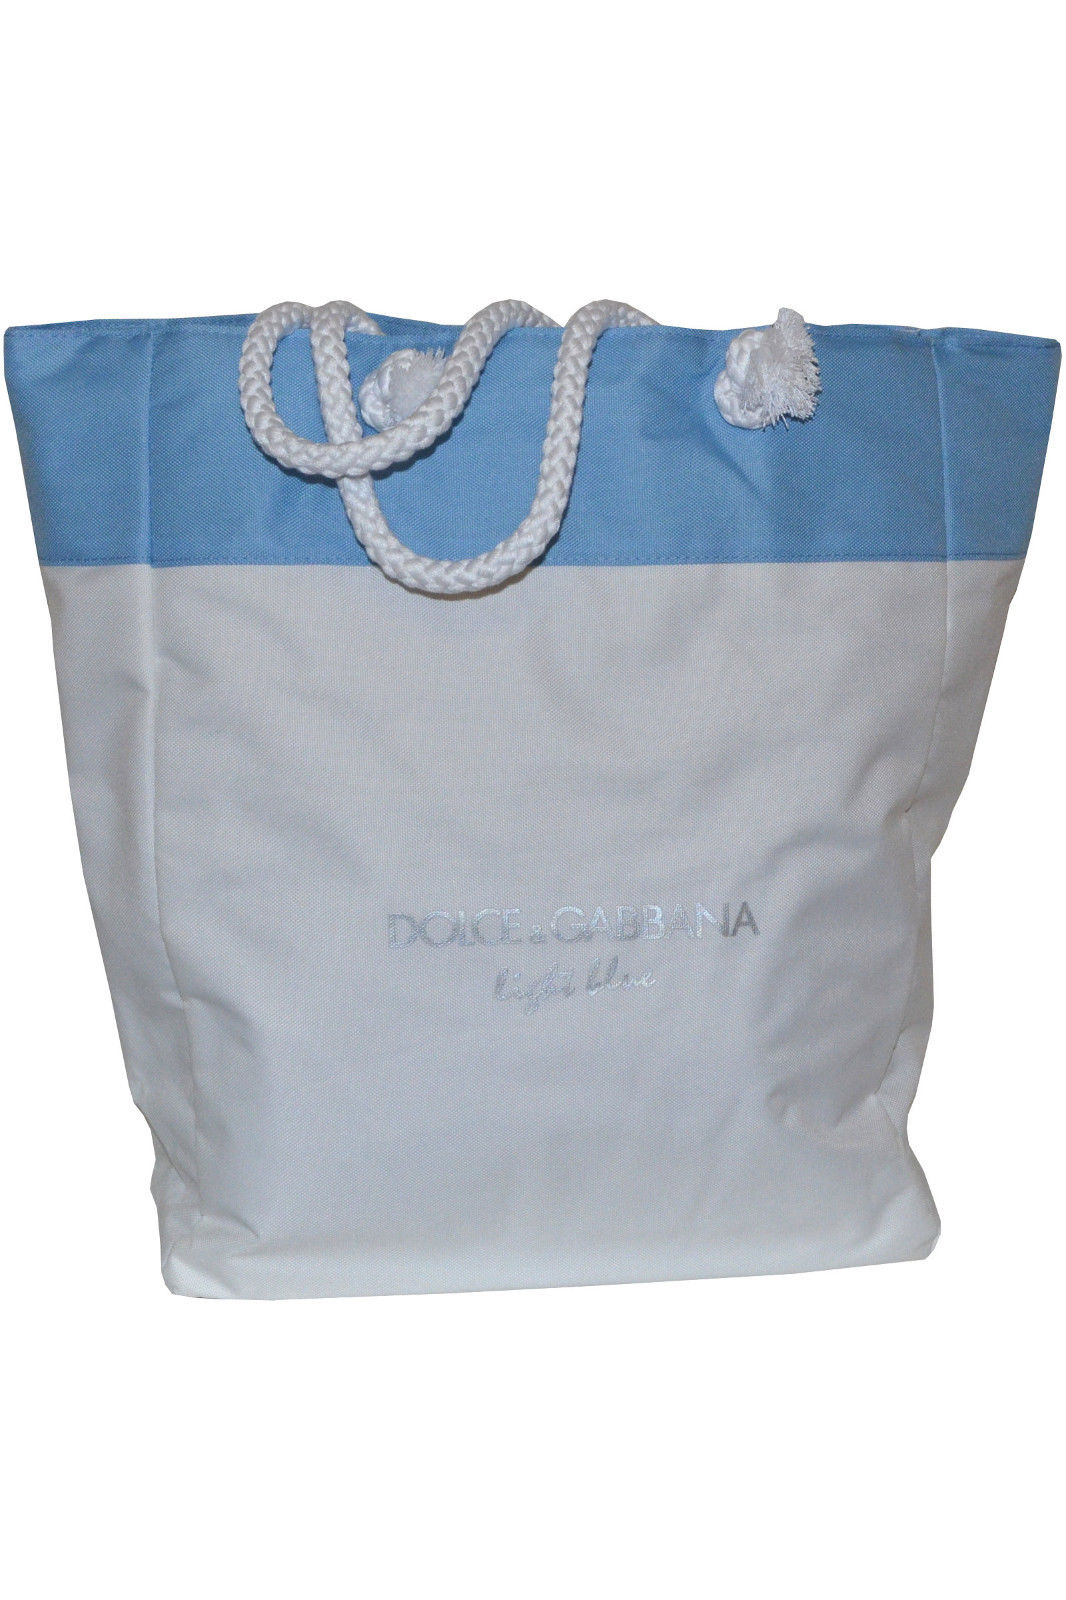 dolce gabbana beach bag